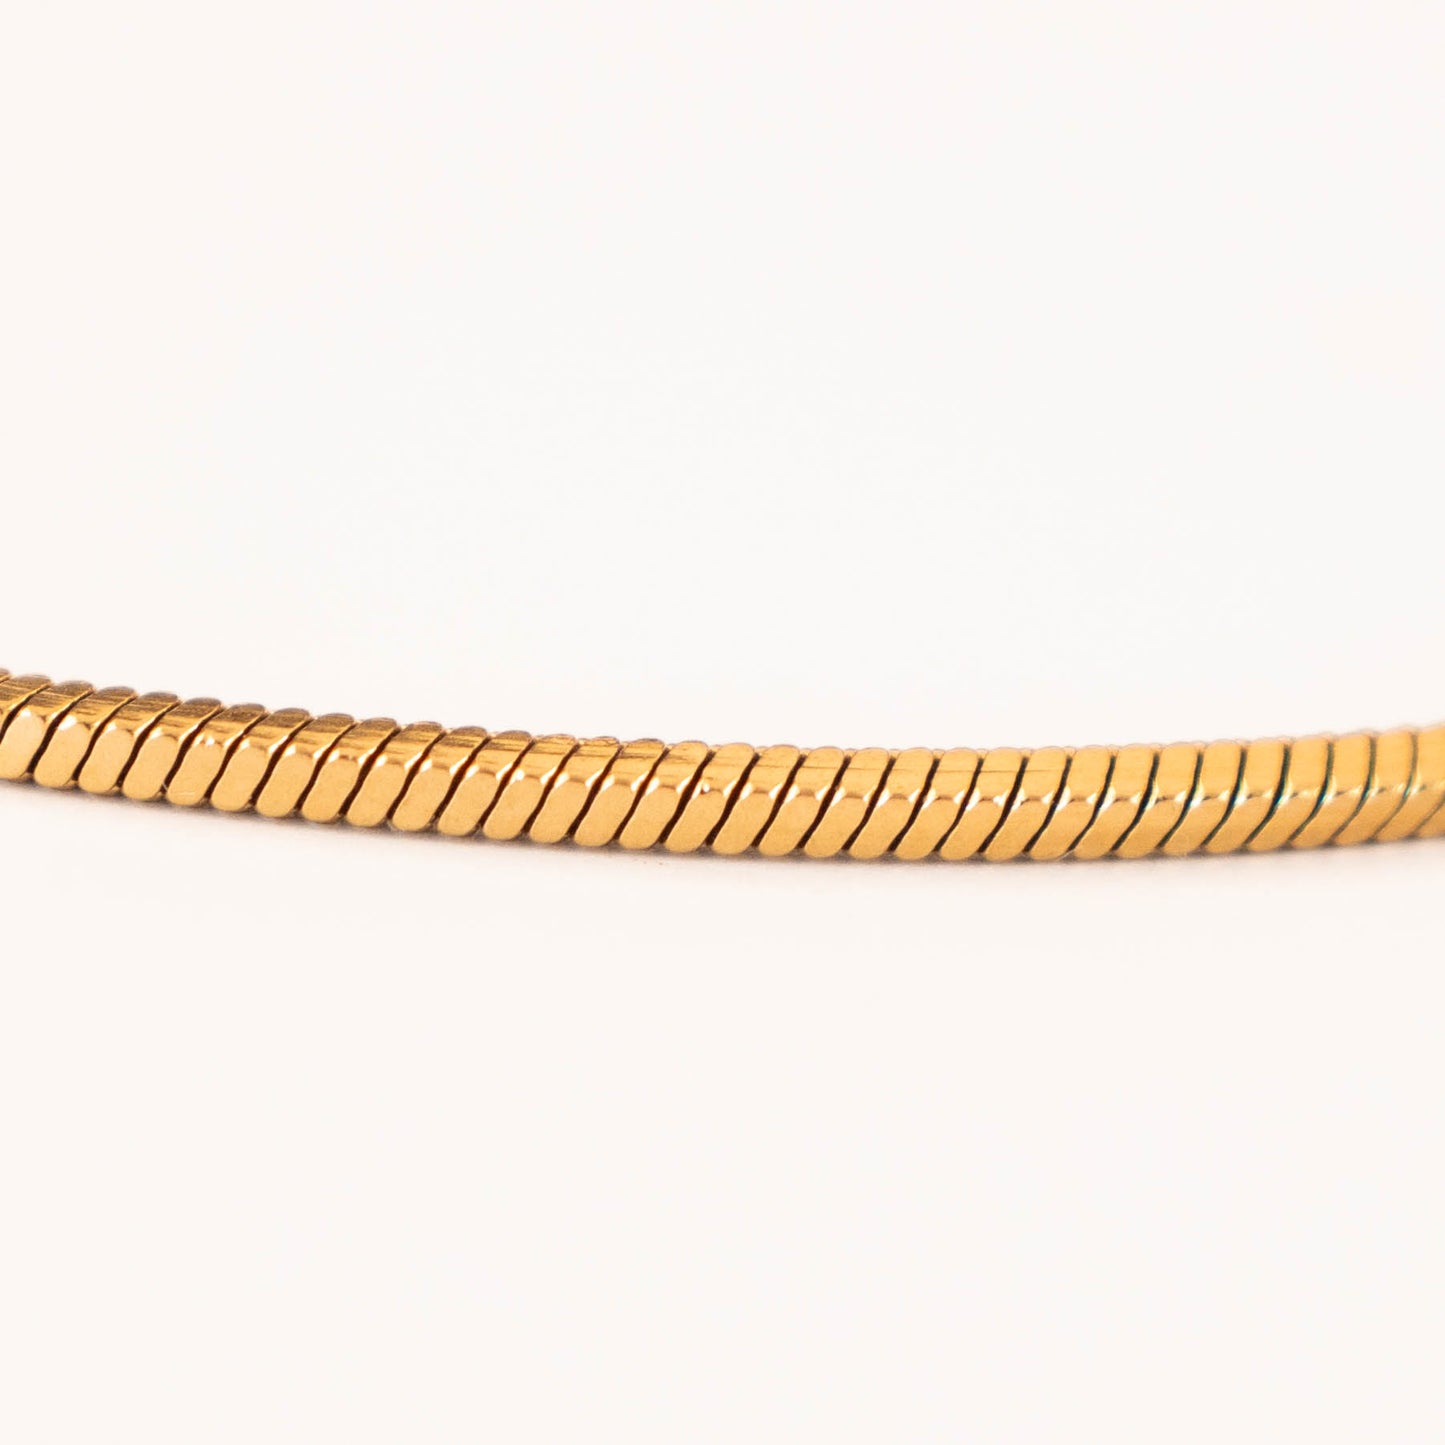 Potosi armband 1mm (goud) - www.mundobracelets.com